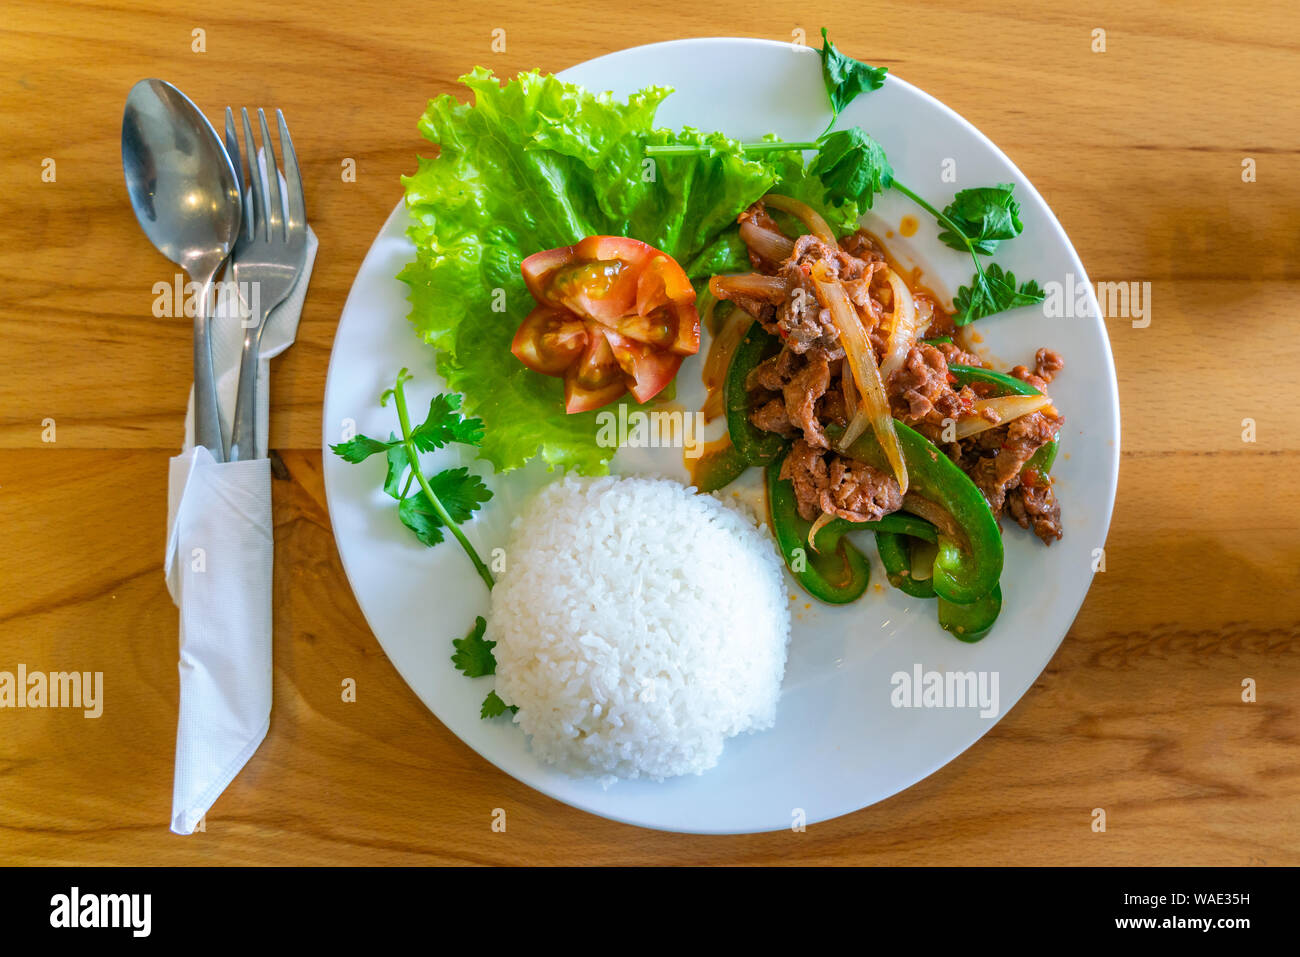 Vue de dessus de délicieux repas asiatique avec du boeuf sauté Banque D'Images